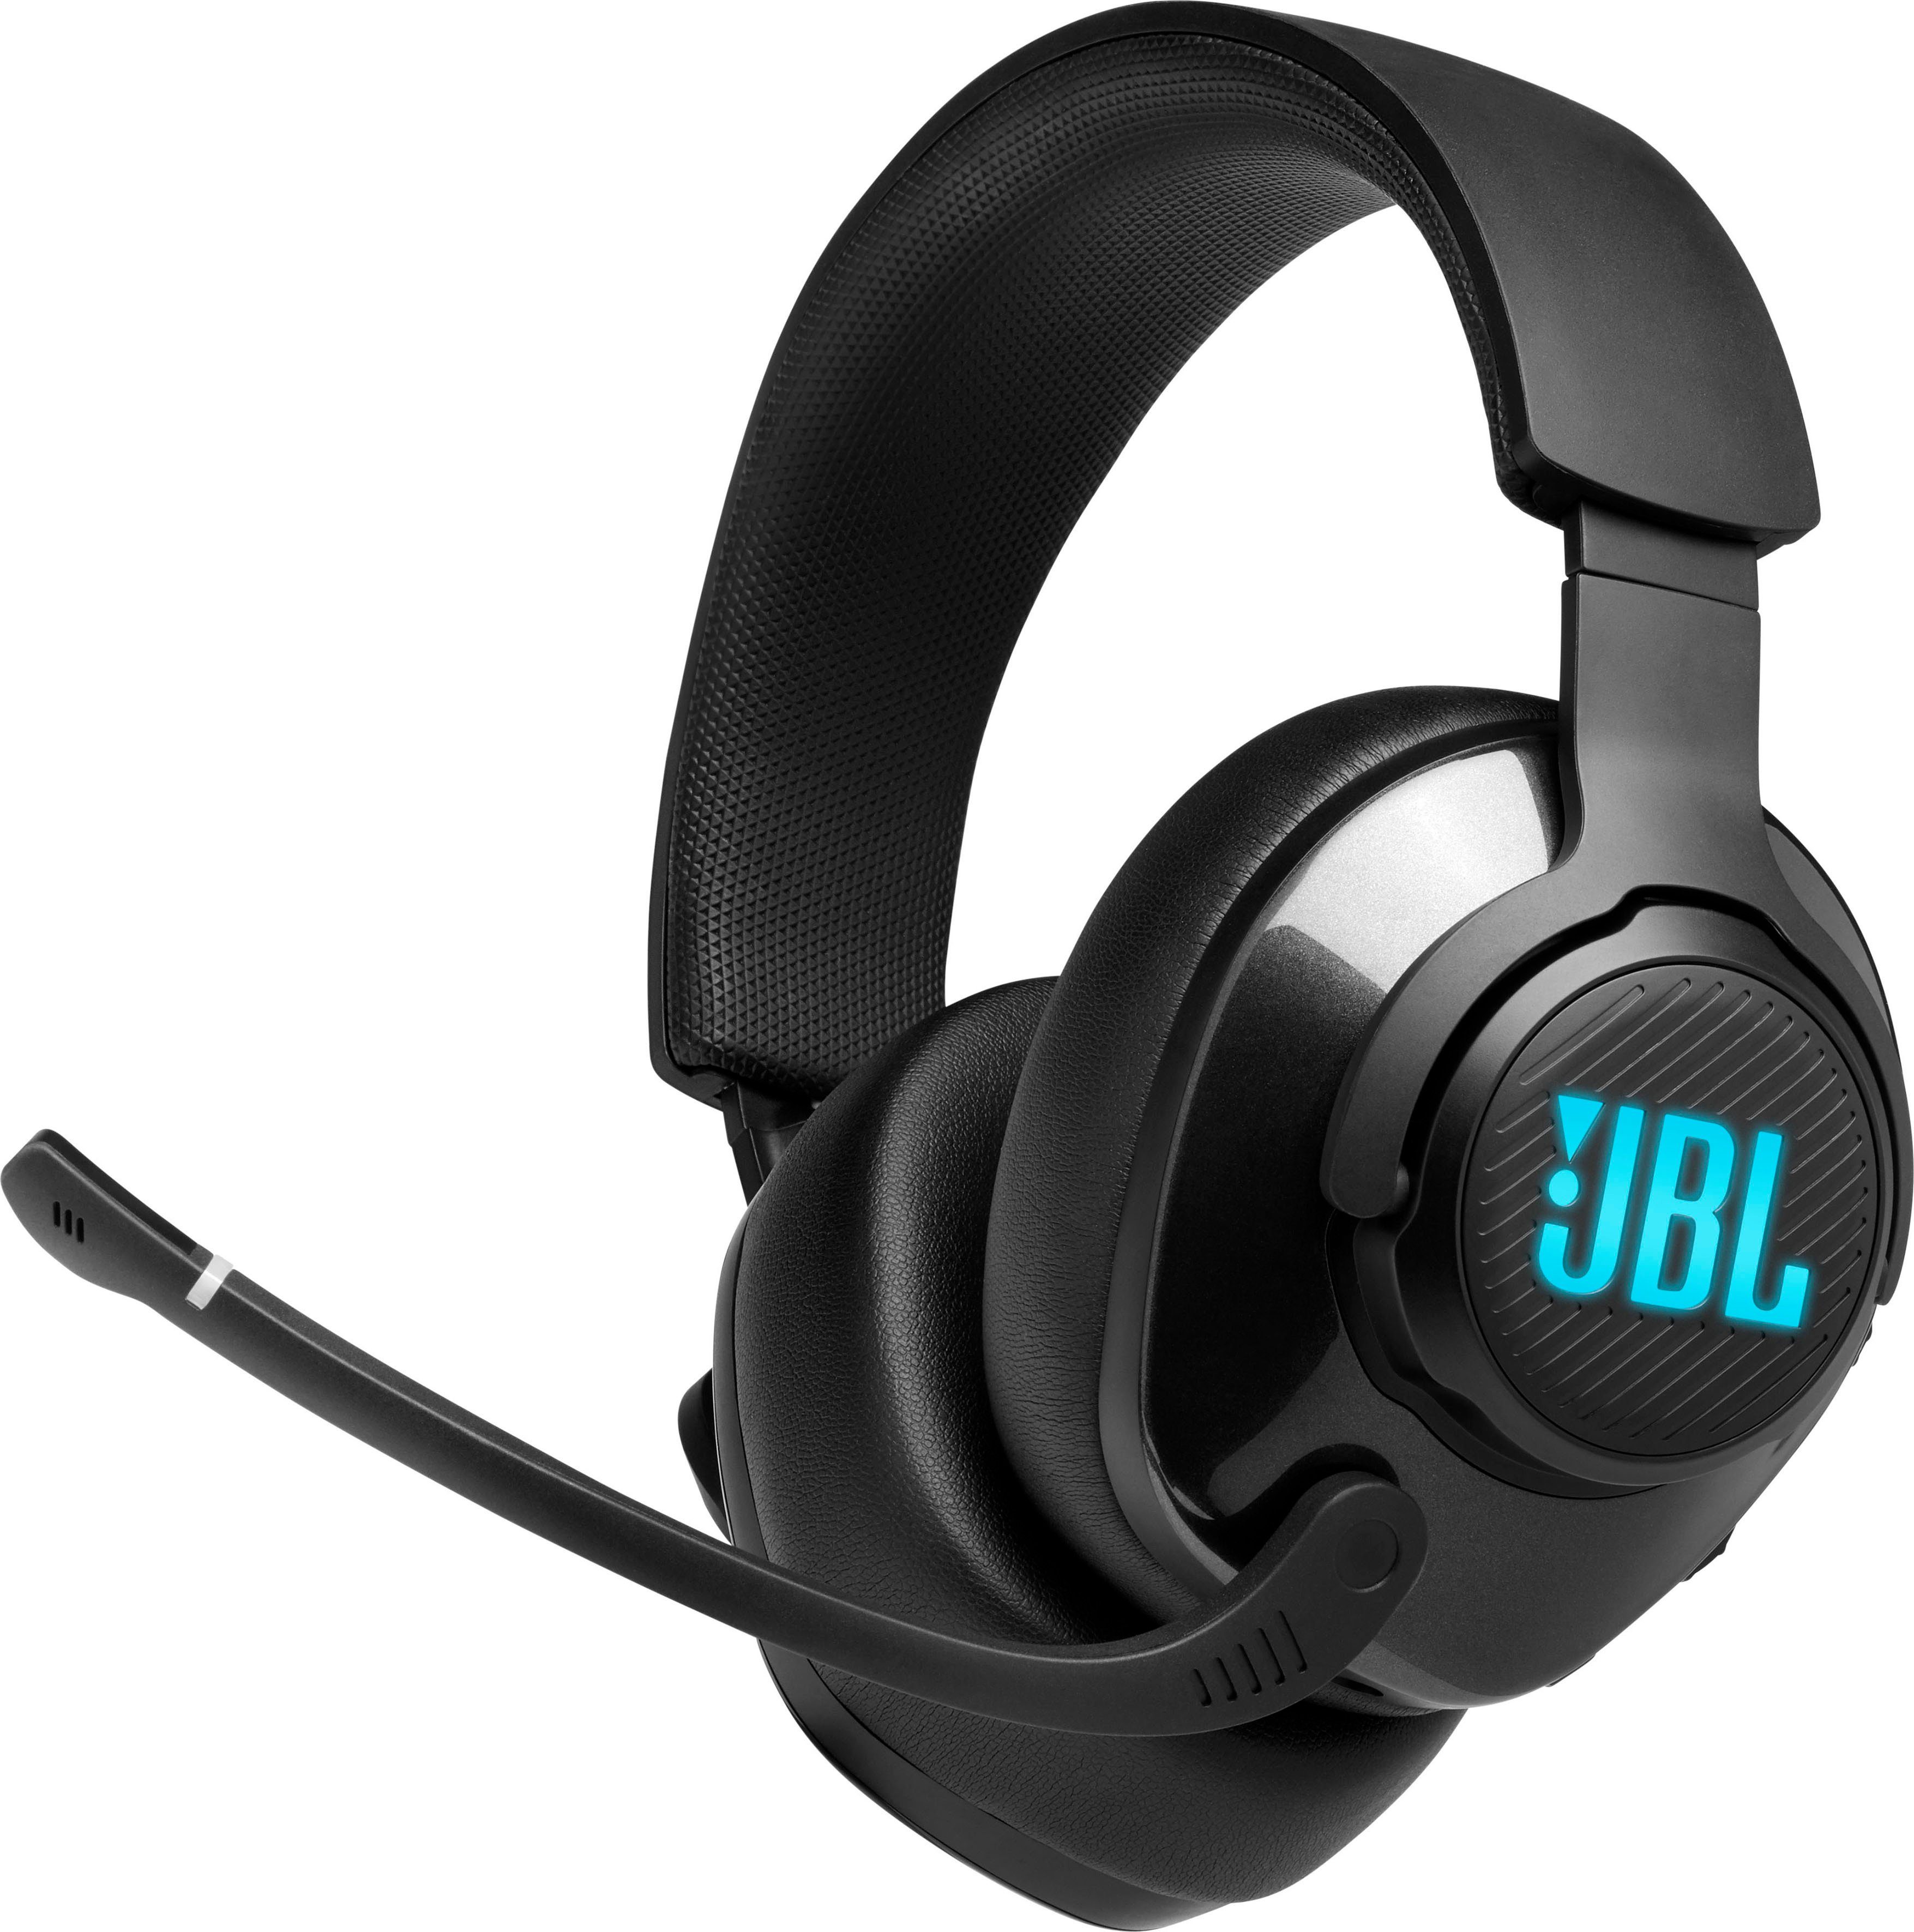 QUANTUM Gaming-Headset JBL 400